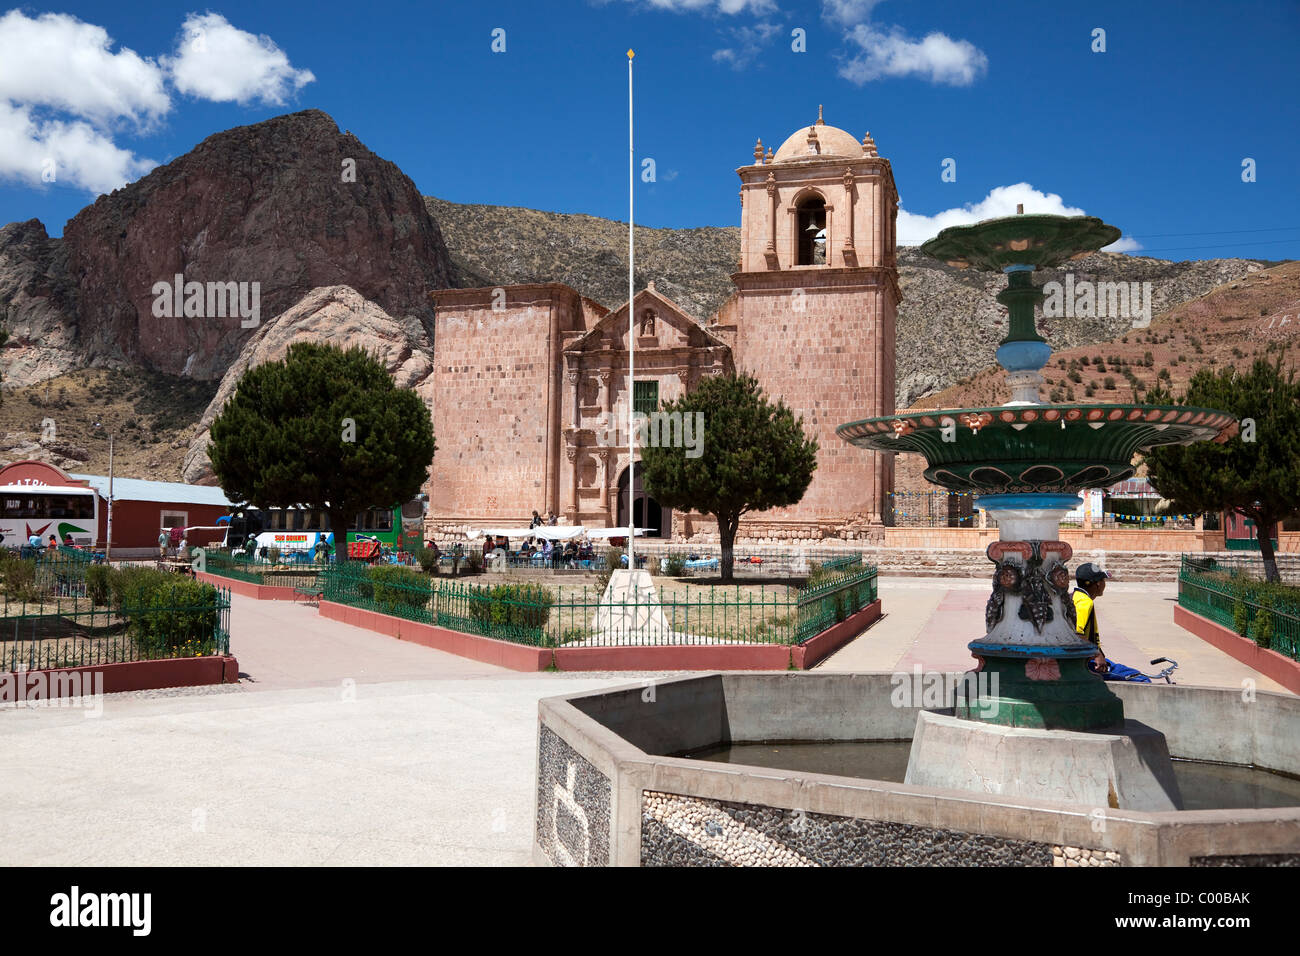 Santa Isabel Church and Plaza (Town Square) at Pucara, Peru, South America Stock Photo